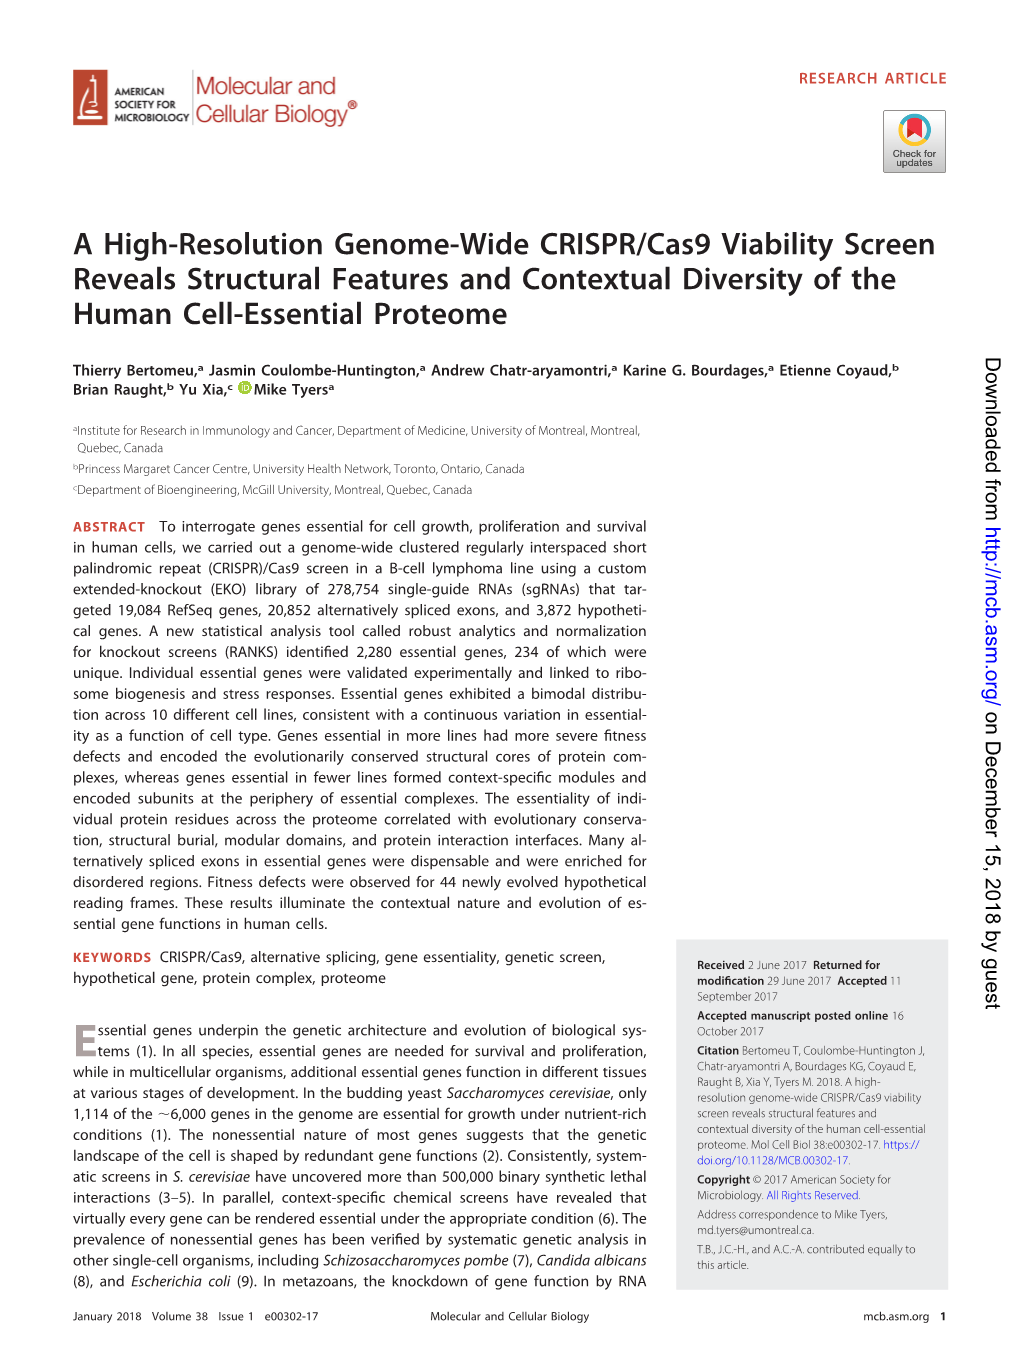 A High-Resolution Genome-Wide CRISPR/Cas9 Viability Screen